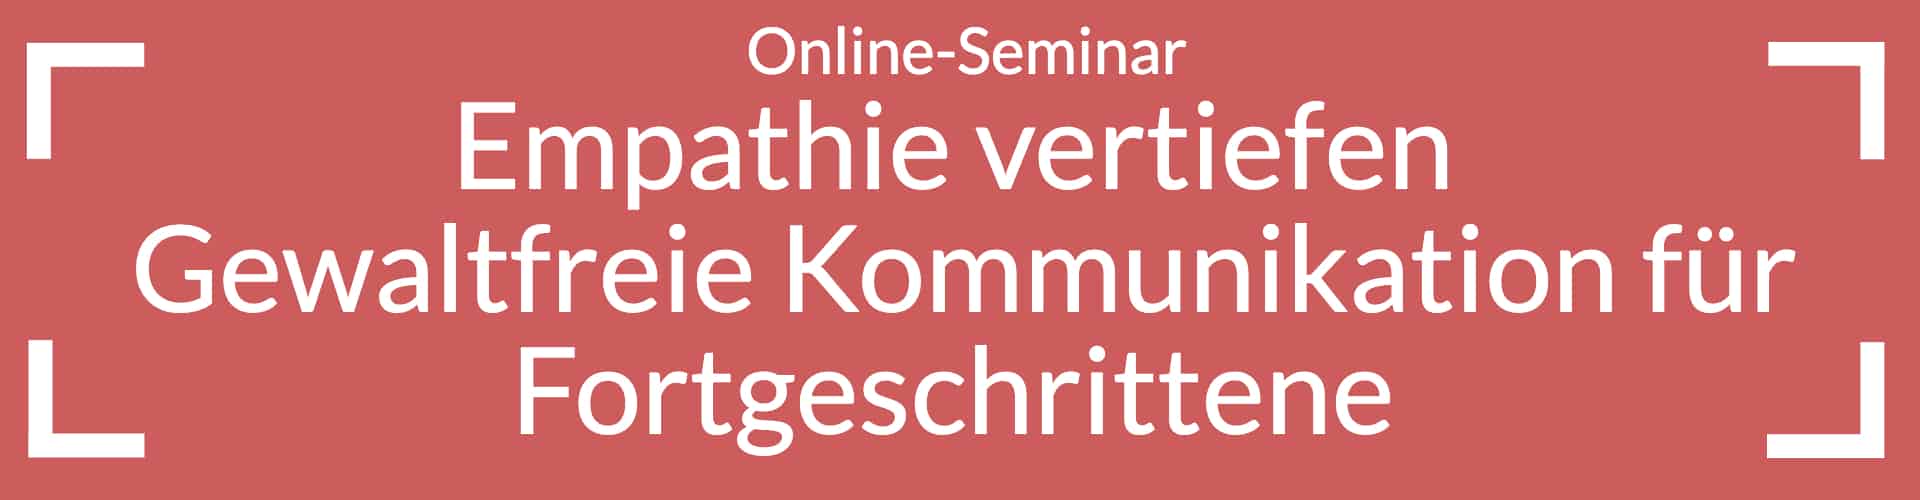 Online-Seminar Empathie vertiefen